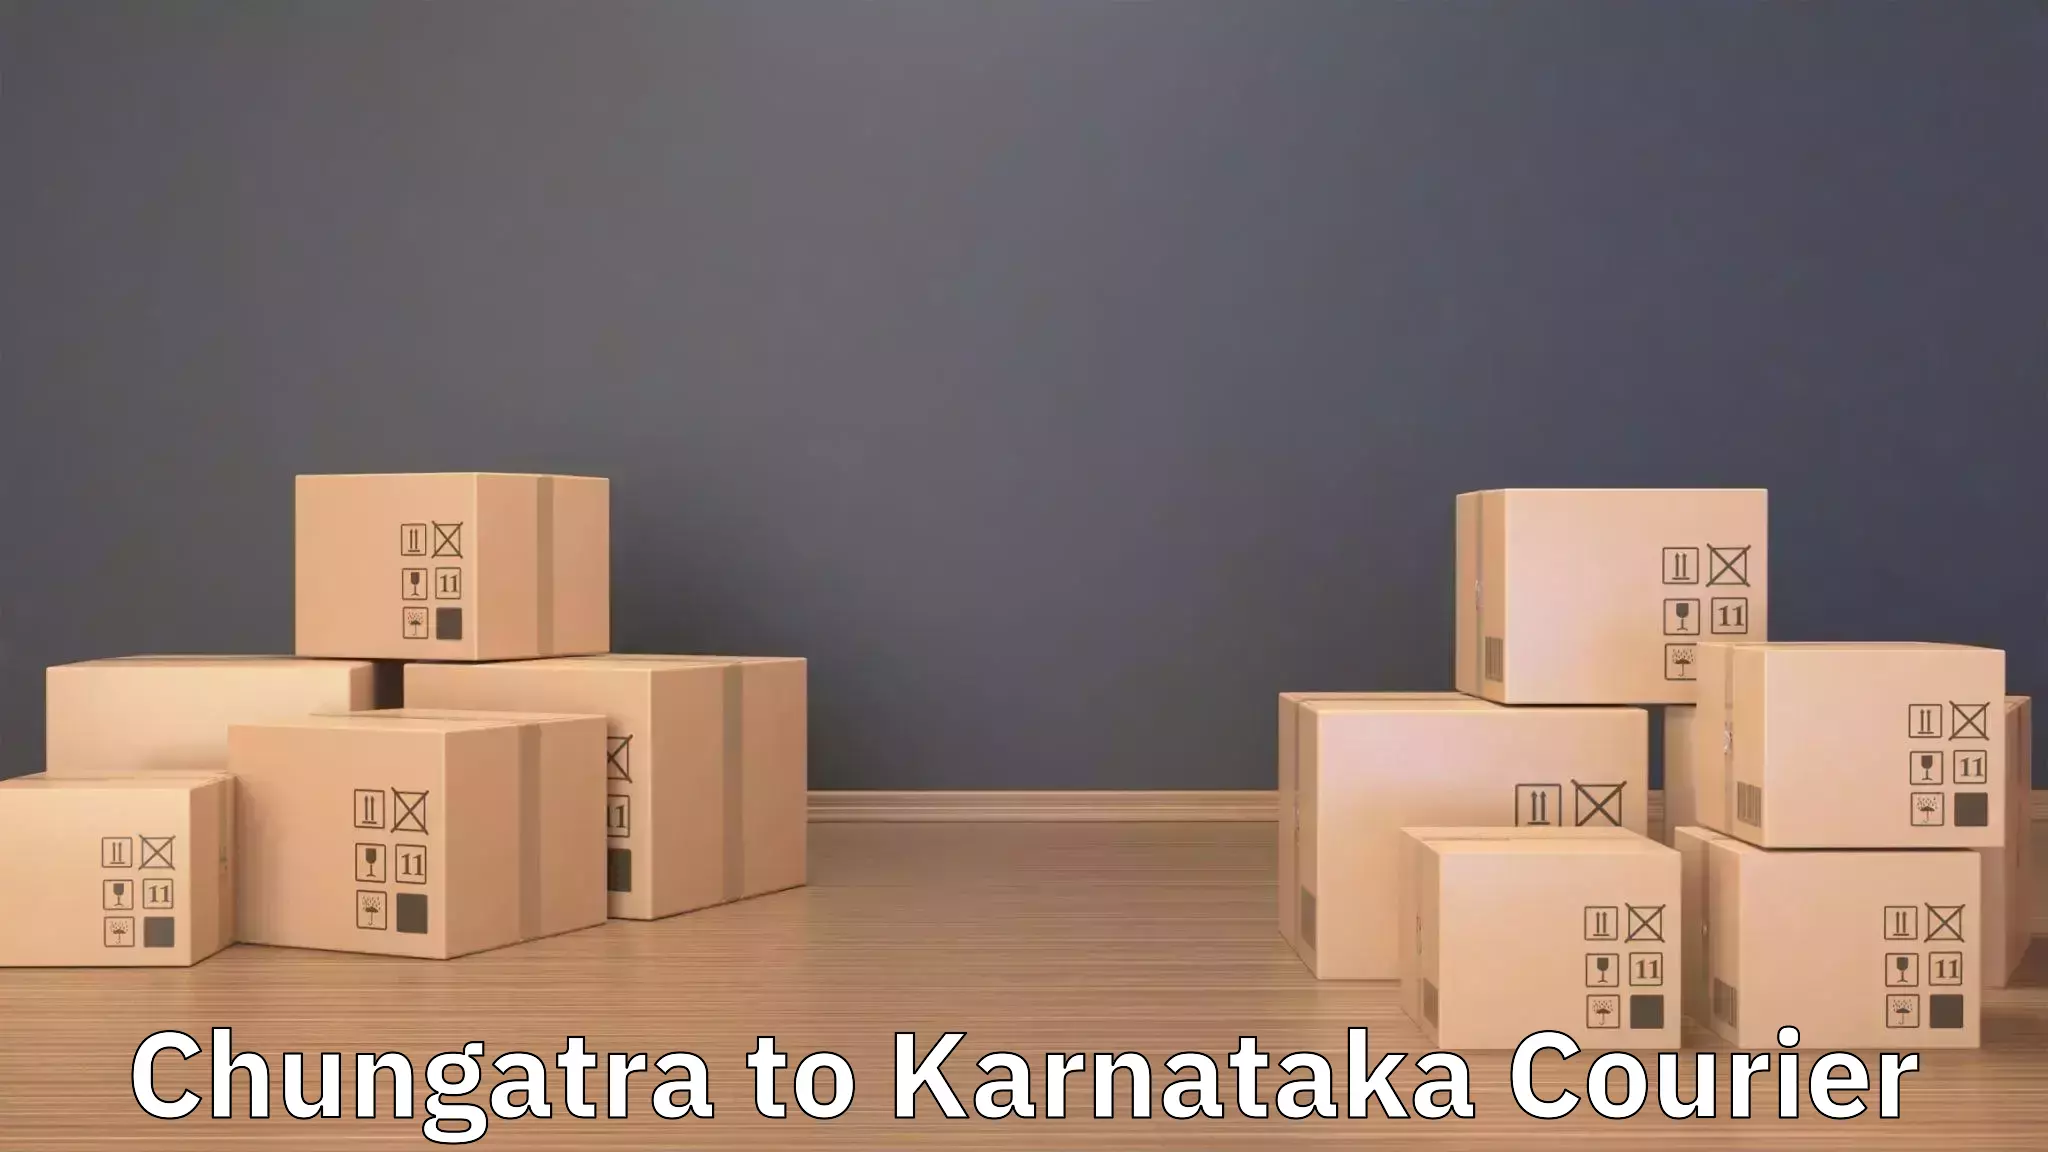 Professional movers and packers Chungatra to Jamkhandi